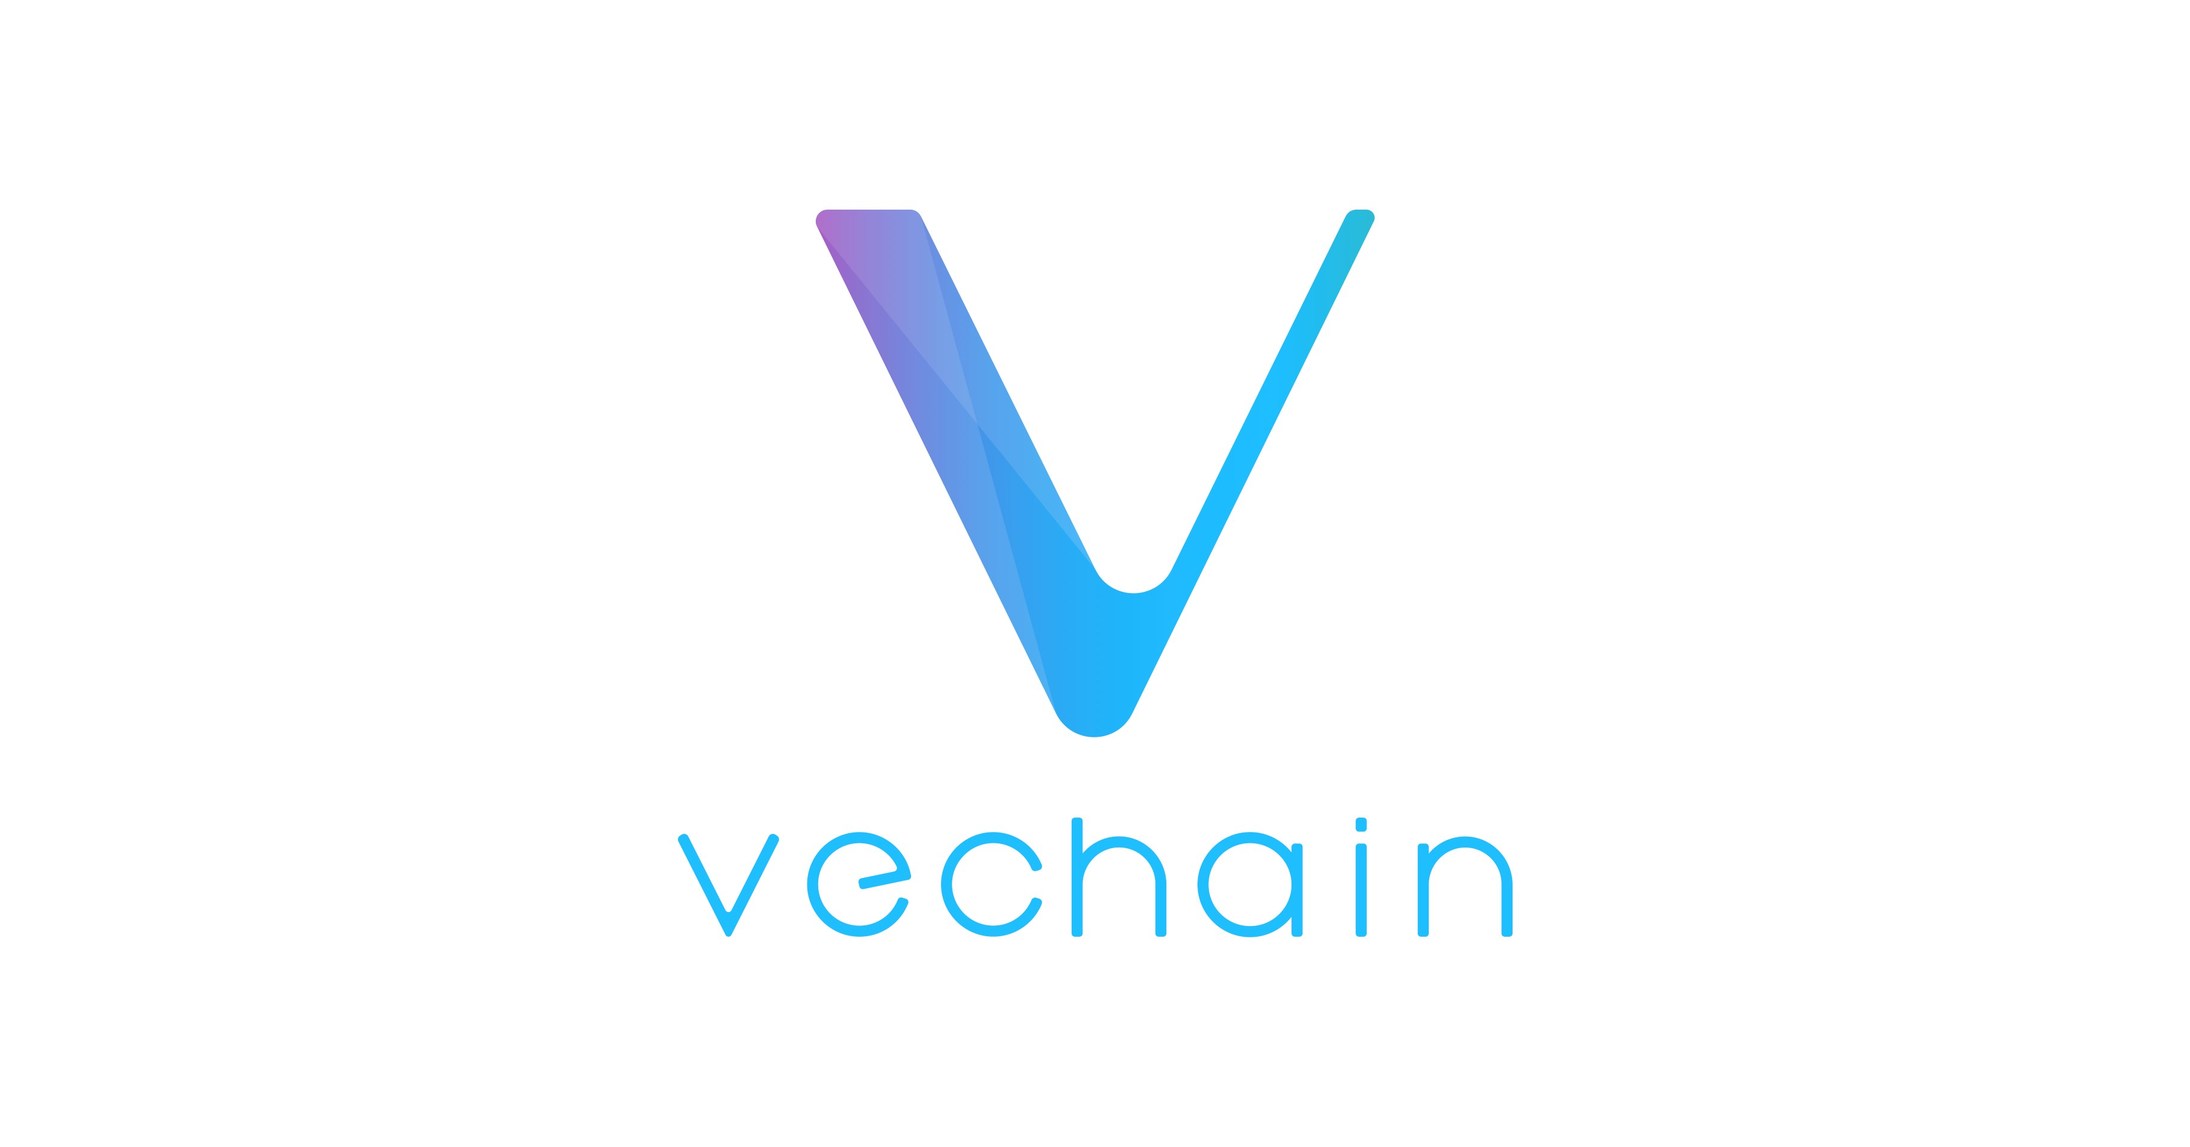 What is VeChain (VET)